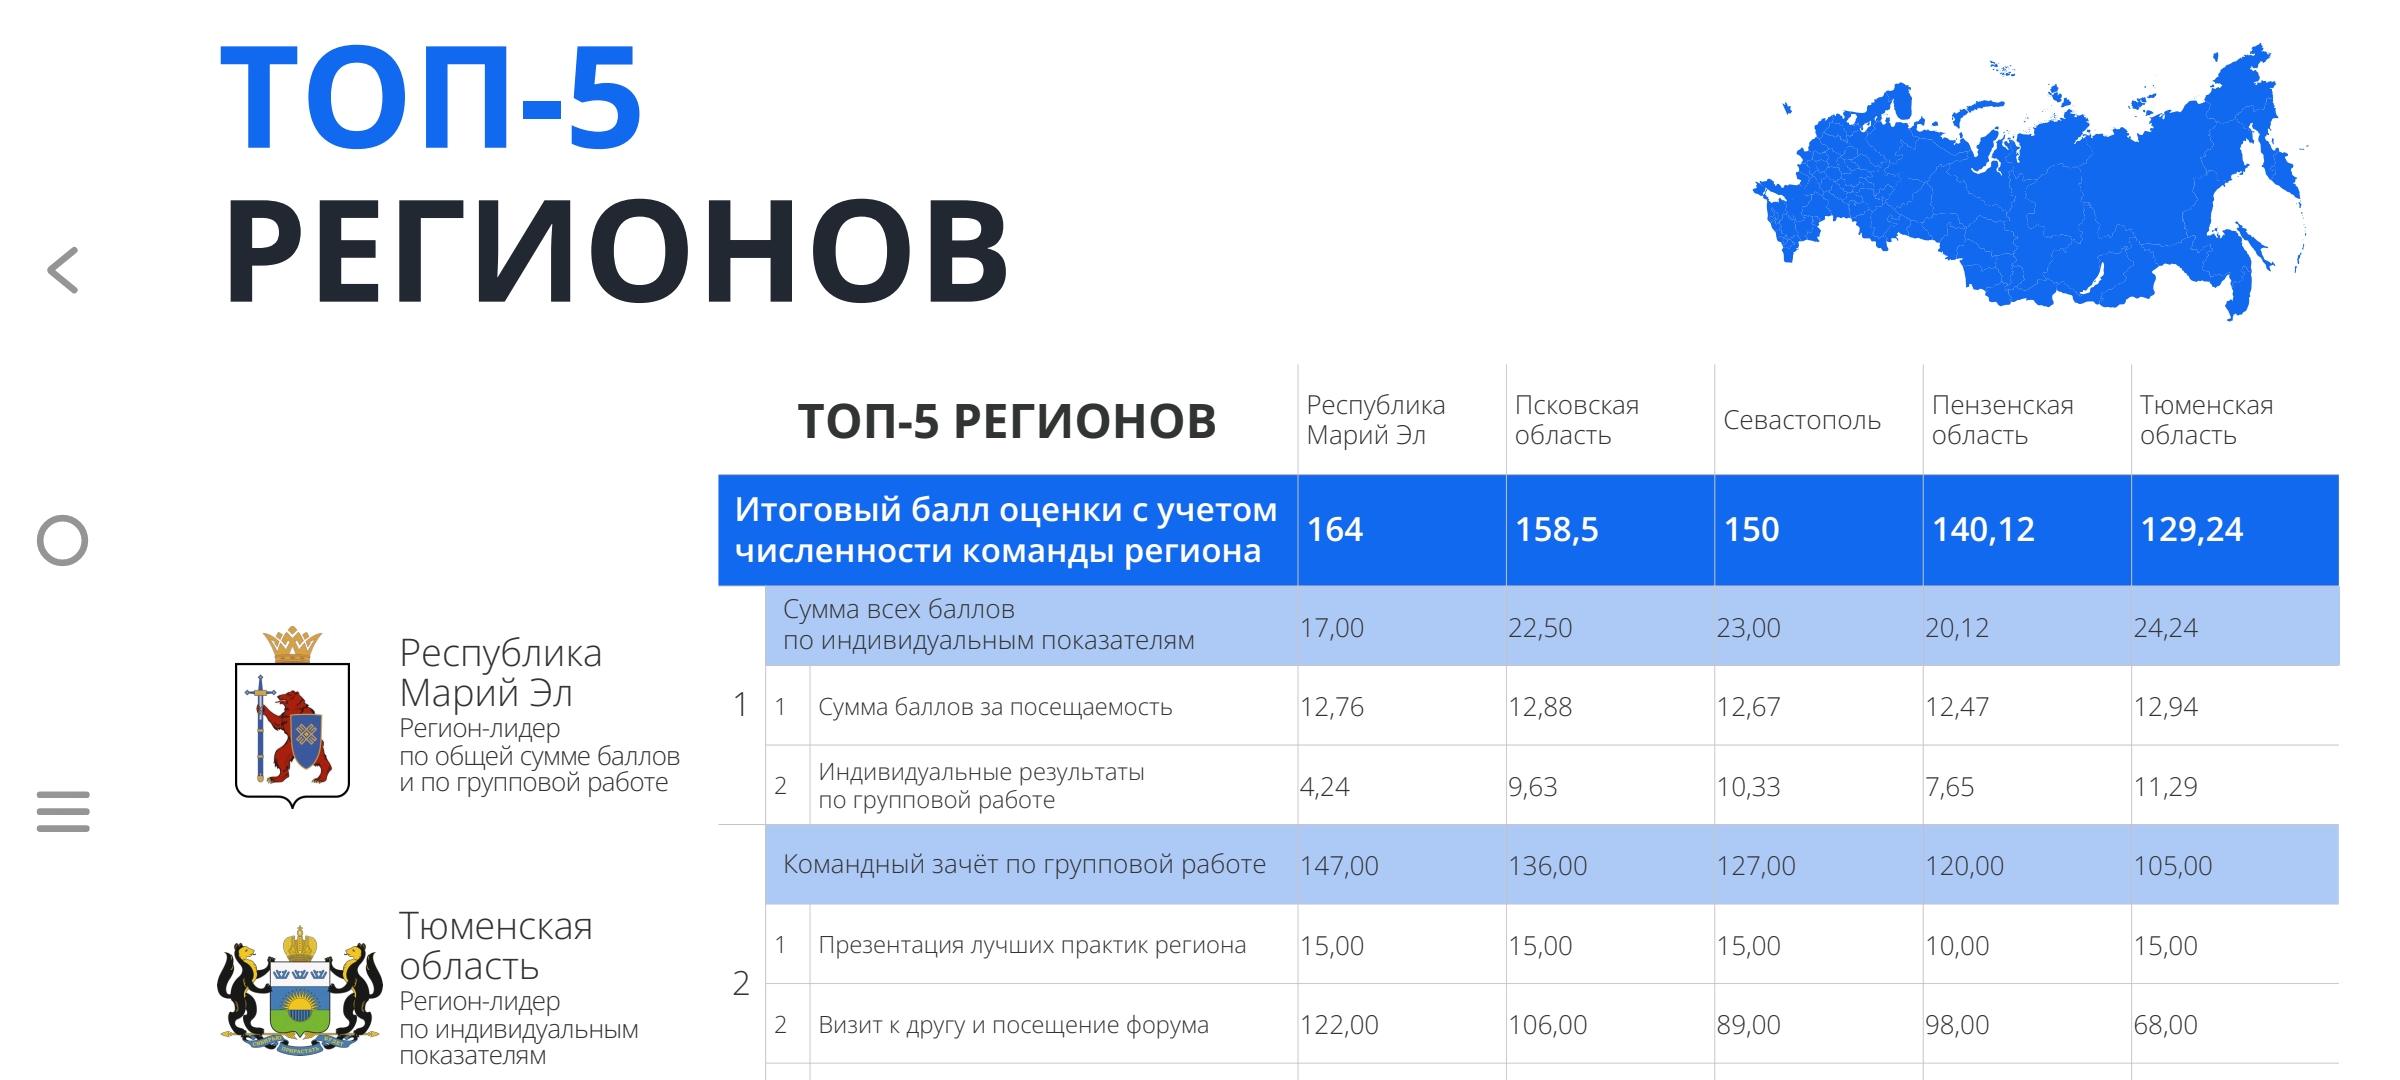 Региональная команда Республики Марий&nbspЭл по реализации Регионального инвестиционного стандарта заняла 1 место в общем рейтинге среди 44 субъектов Российской Федерации